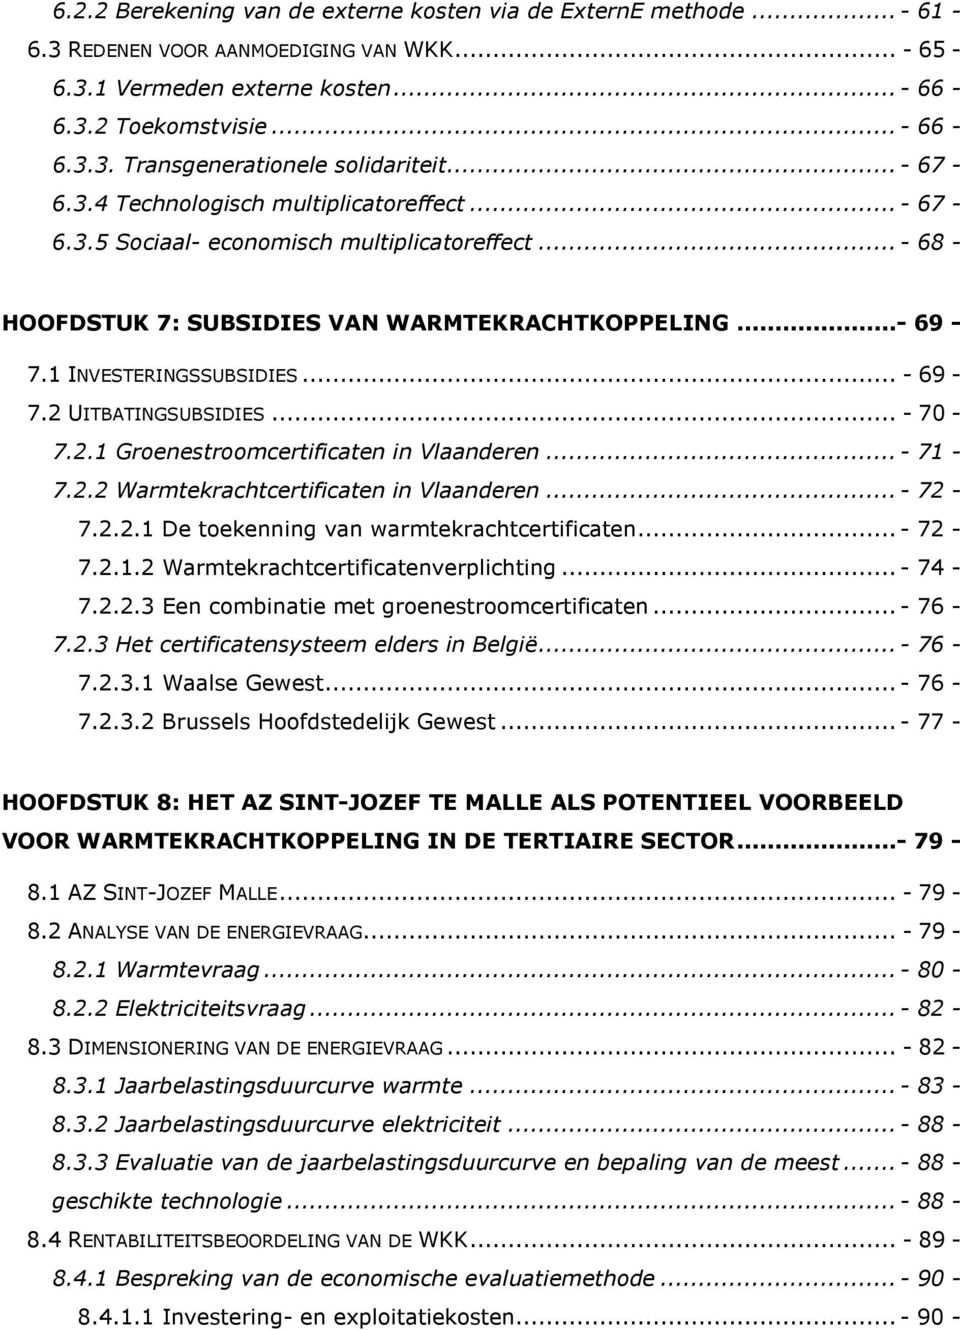 2 UITBATINGSUBSIDIES... - 70-7.2.1 Groenestroomcertificaten in Vlaanderen...- 71-7.2.2 Warmtekrachtcertificaten in Vlaanderen...- 72-7.2.2.1 De toekenning van warmtekrachtcertificaten...- 72-7.2.1.2 Warmtekrachtcertificatenverplichting.